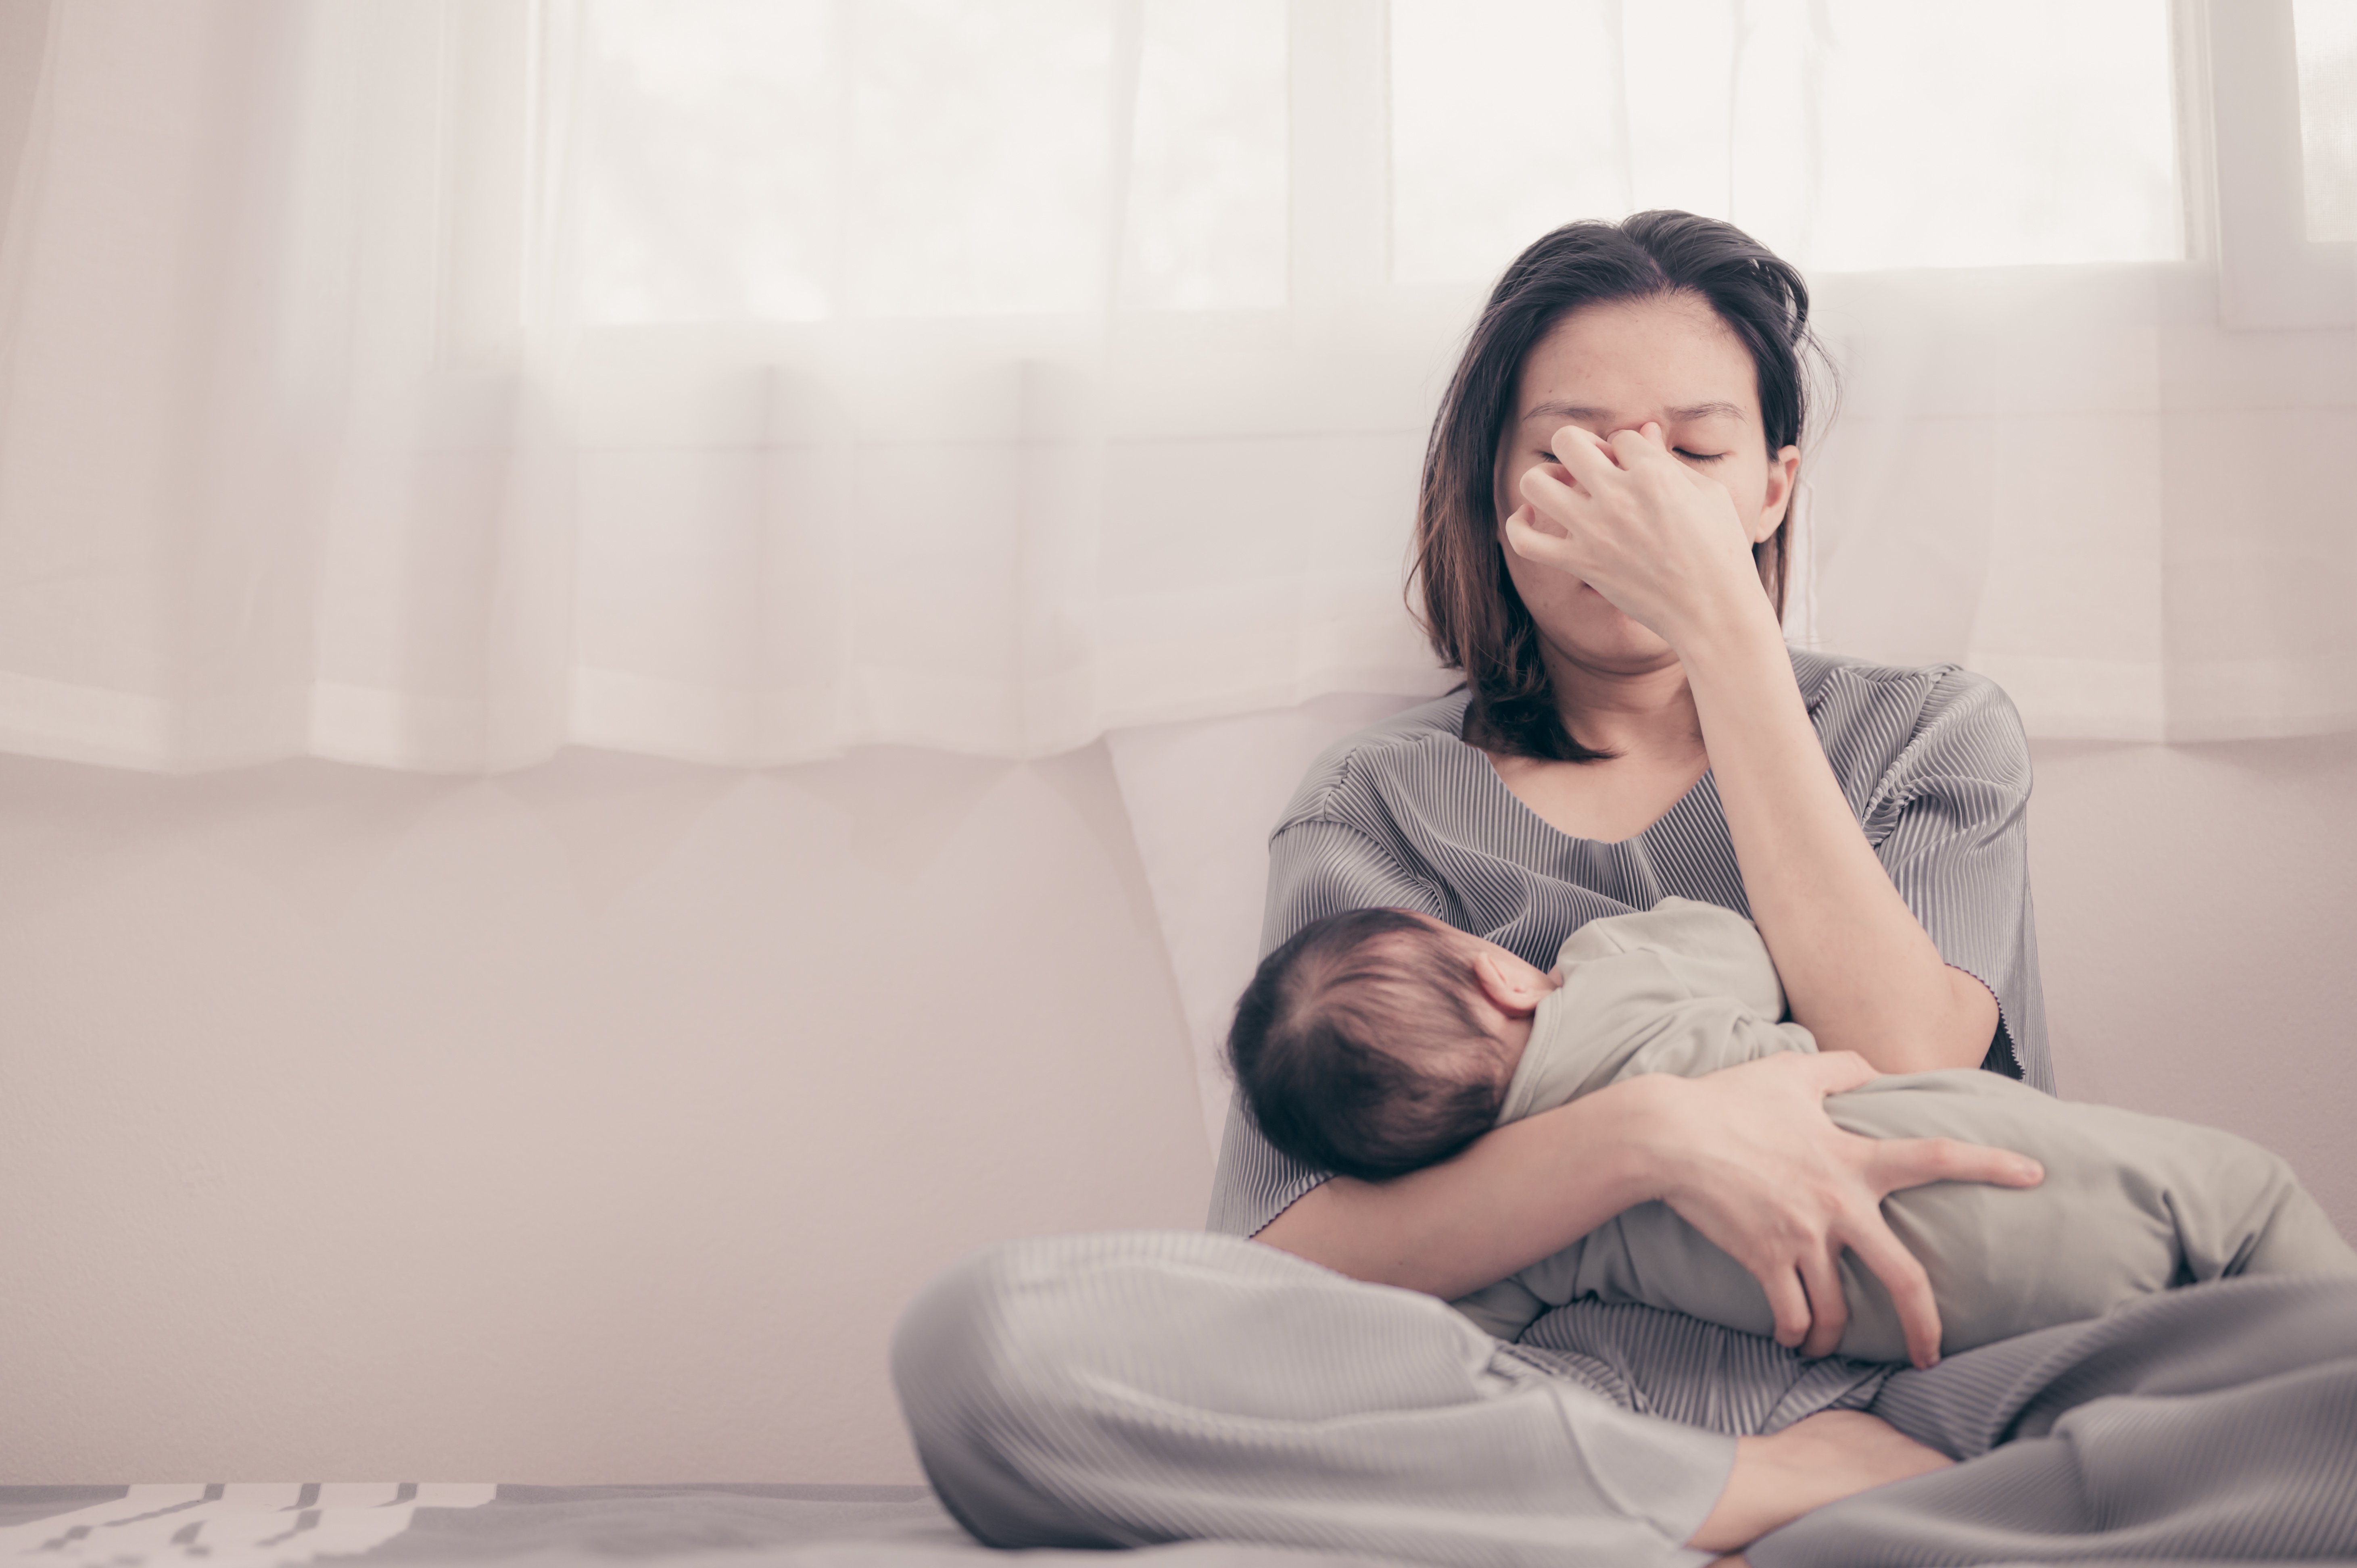 Recognizing and Treating Postpartum Depression